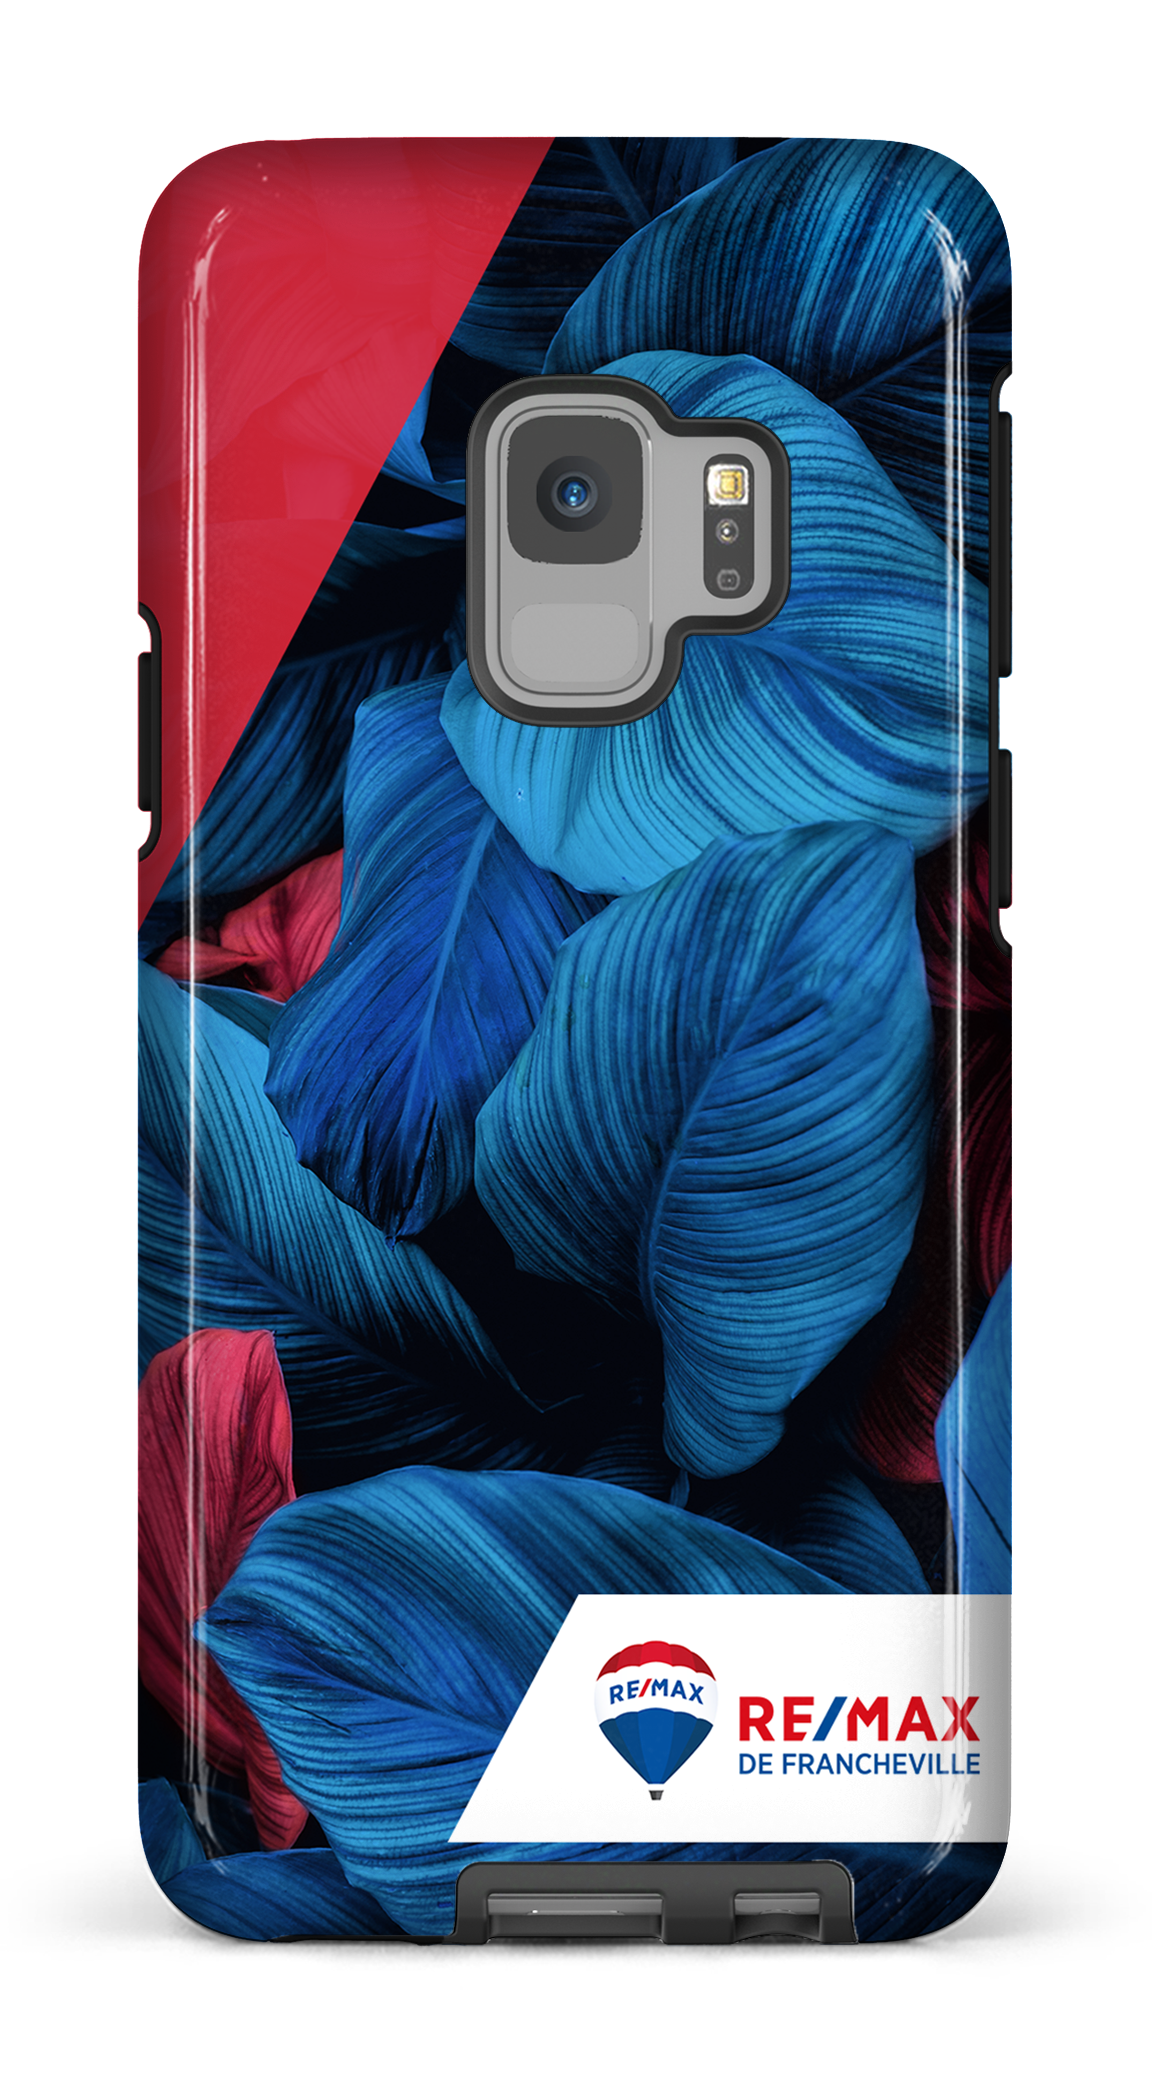 Végétation bicolorede Francheville - Galaxy S9